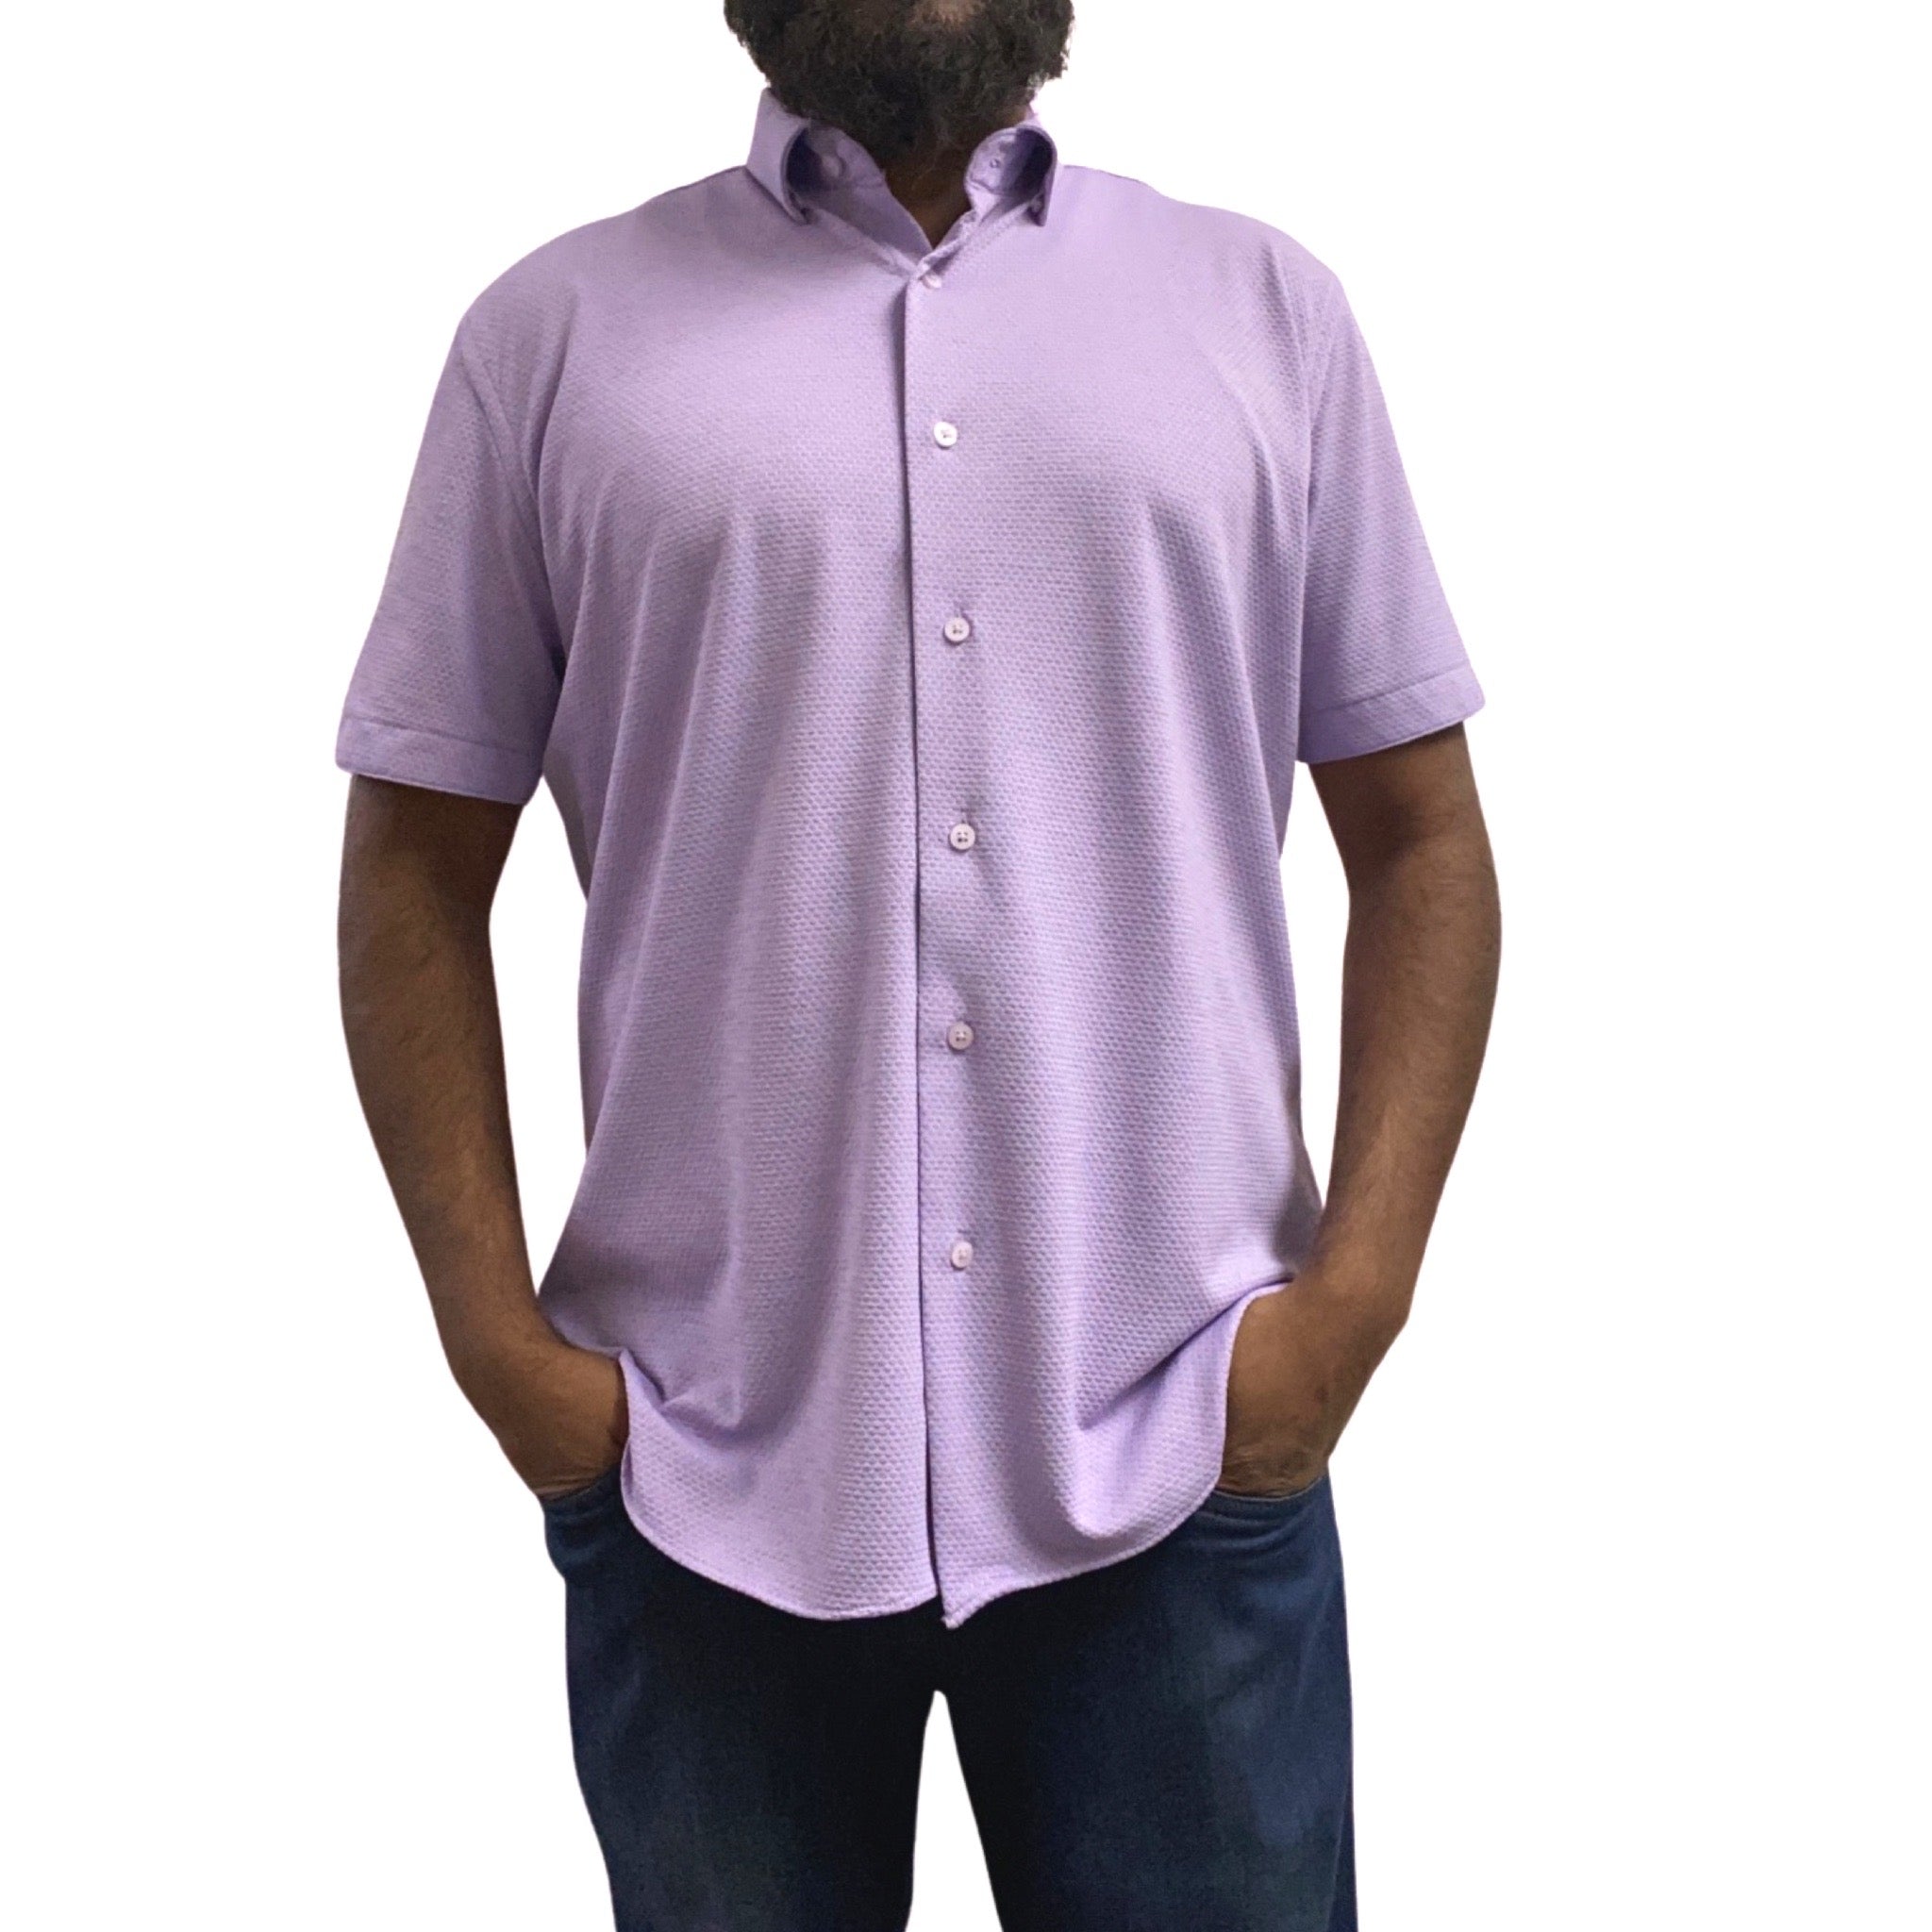 Men’s summer button up casual shirt